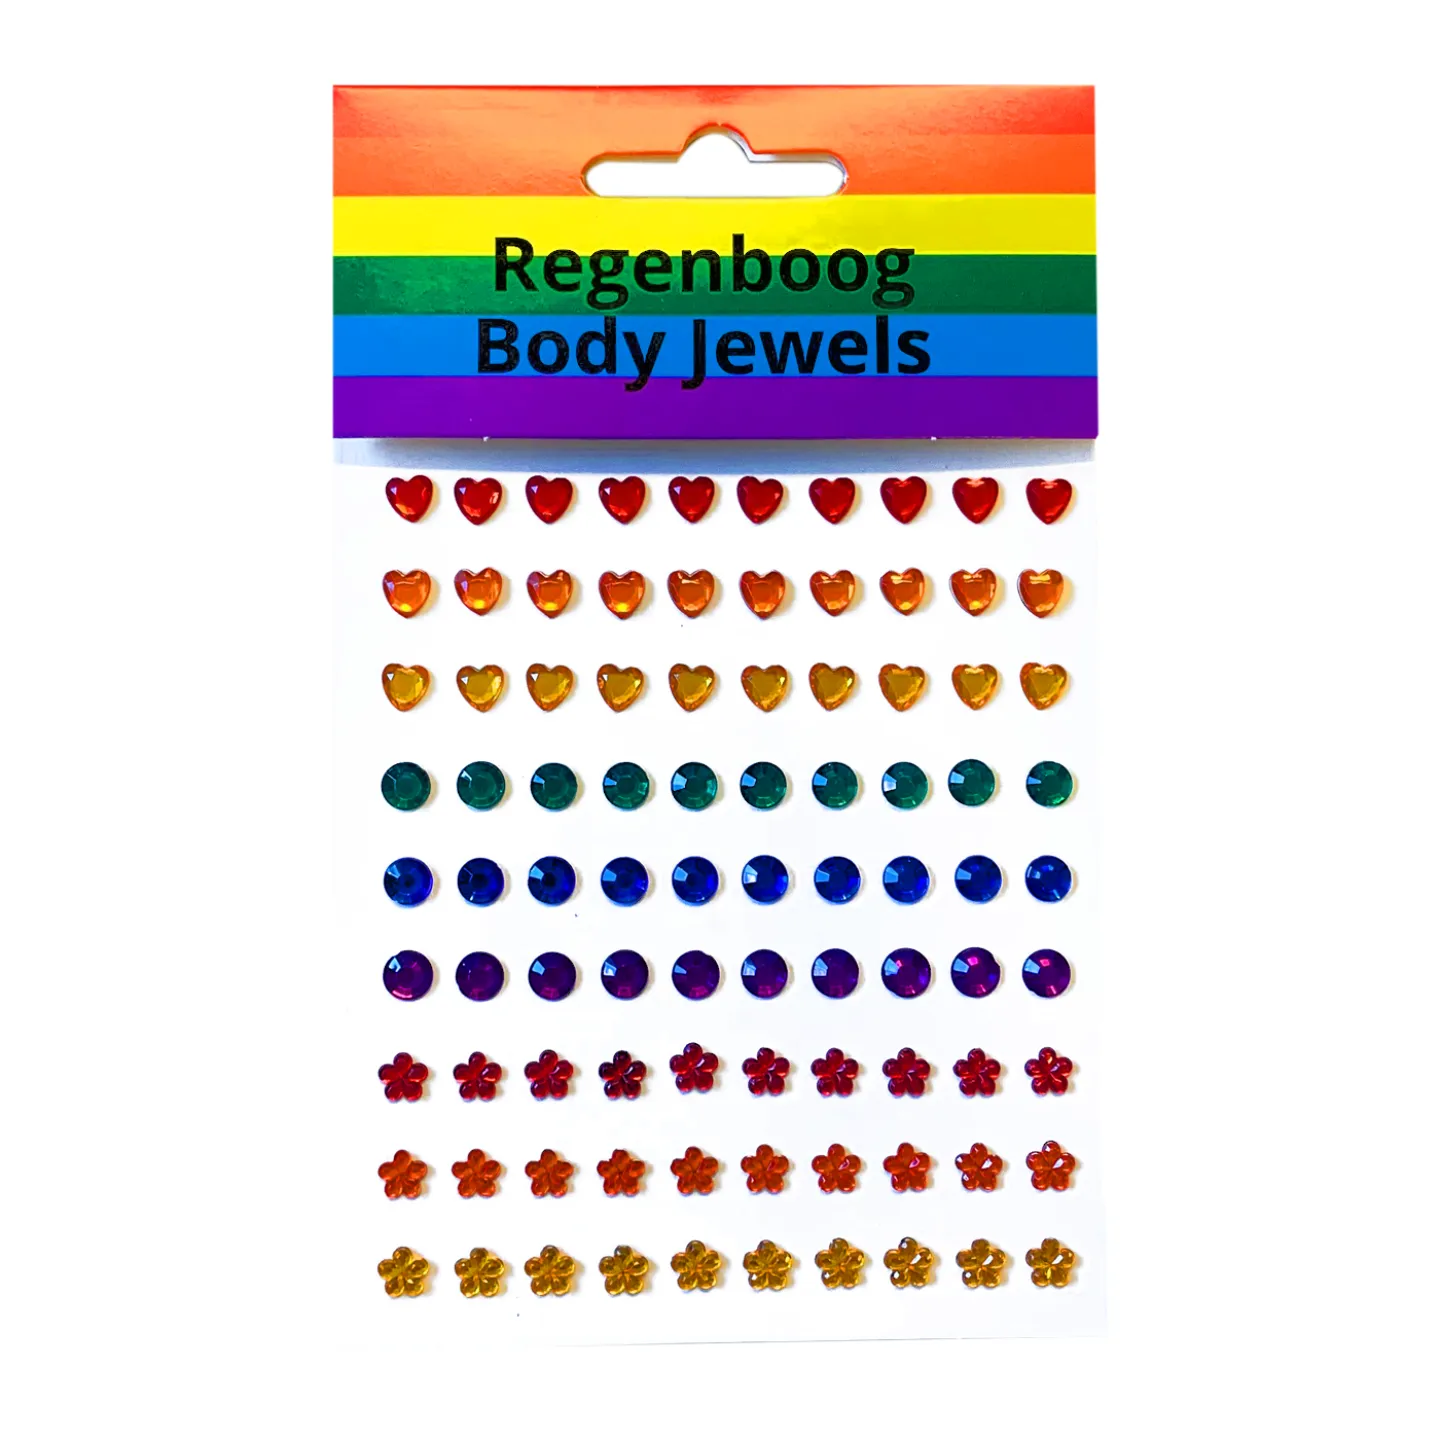 Regenboog body jewels kopen.